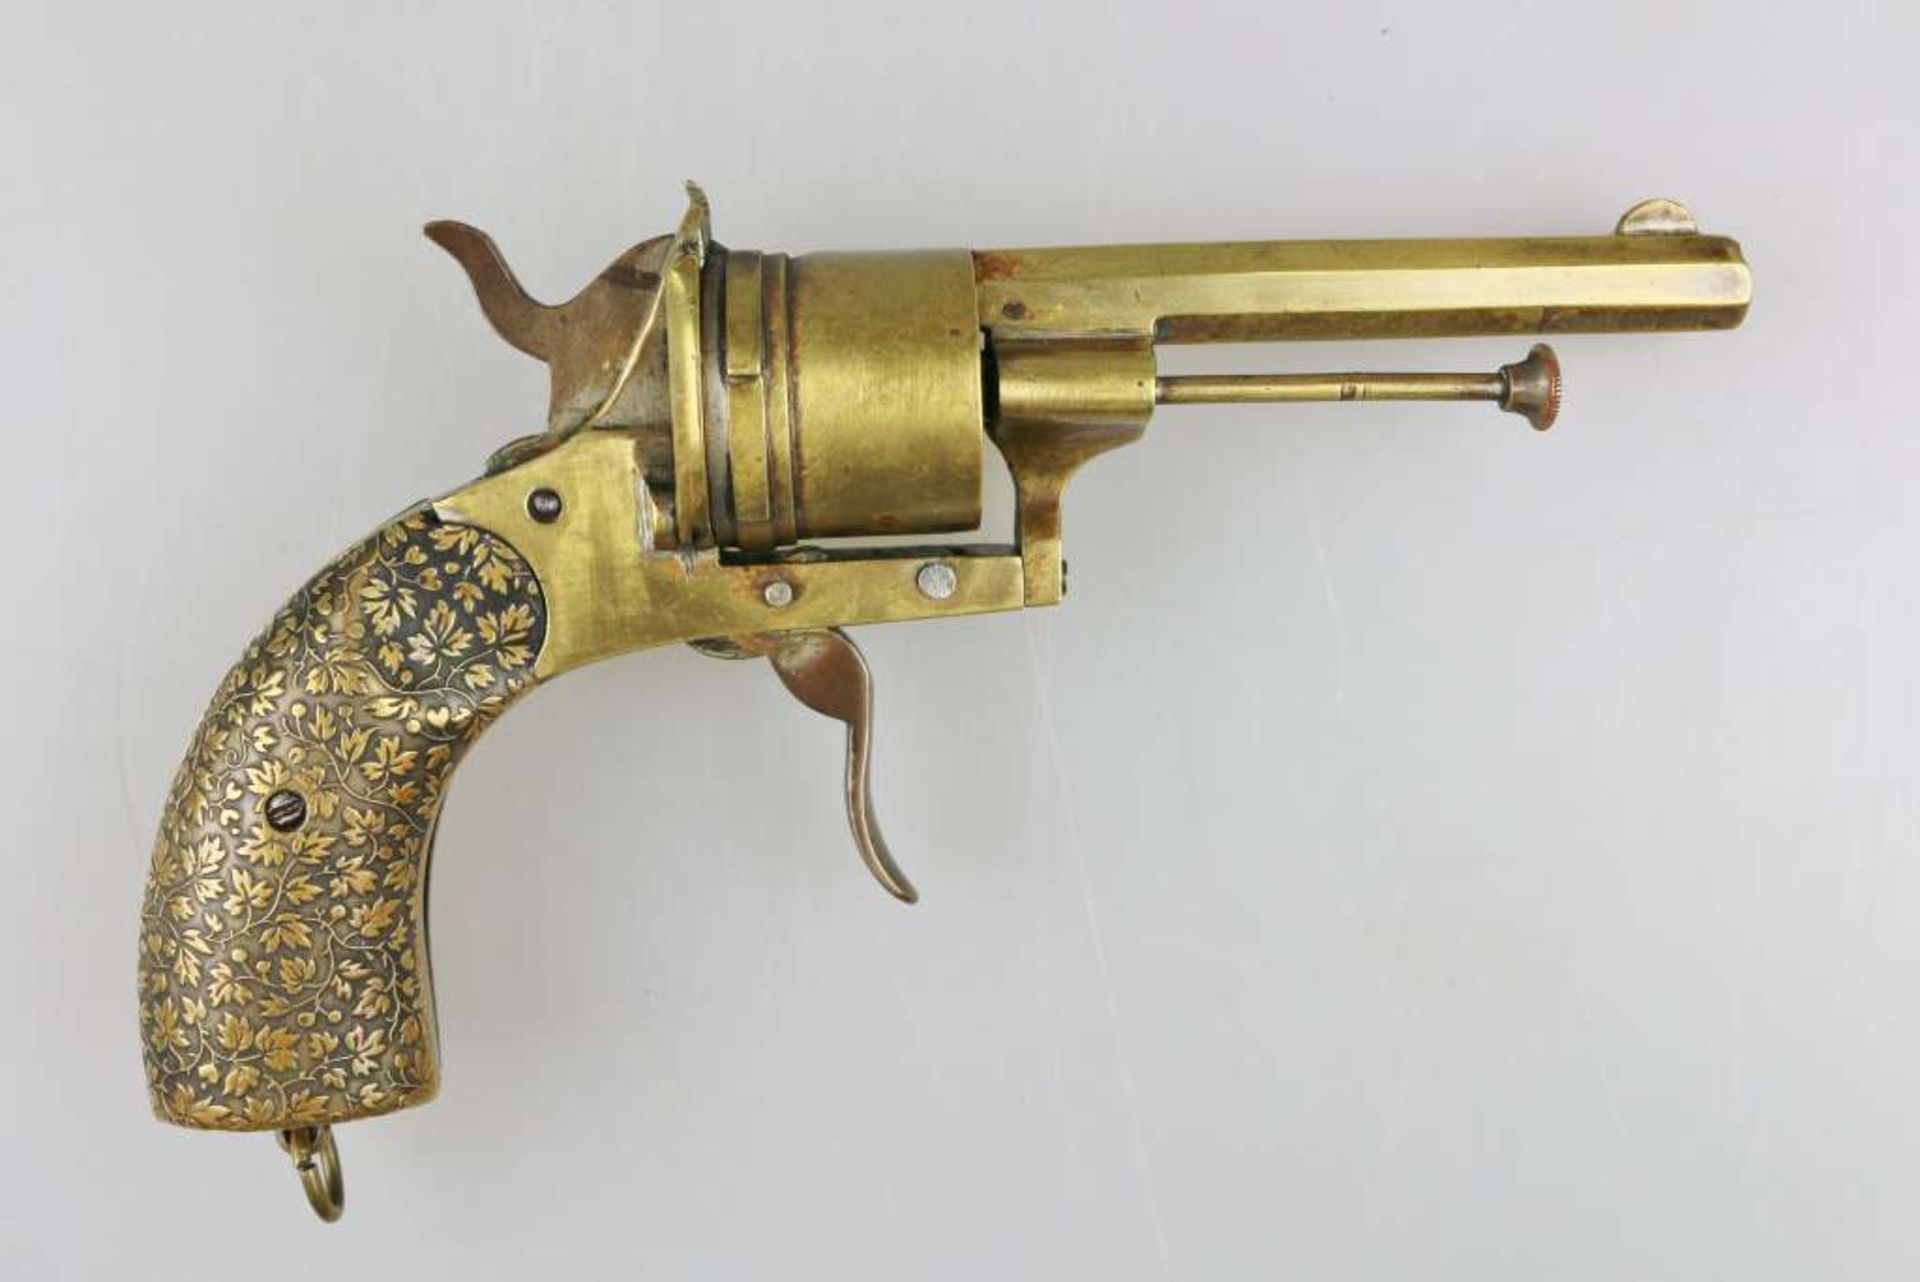 Zigarrenschneider in Form eines frühen Revolvers, um 1880, Revolvertrommel dient zur Aufnahme der